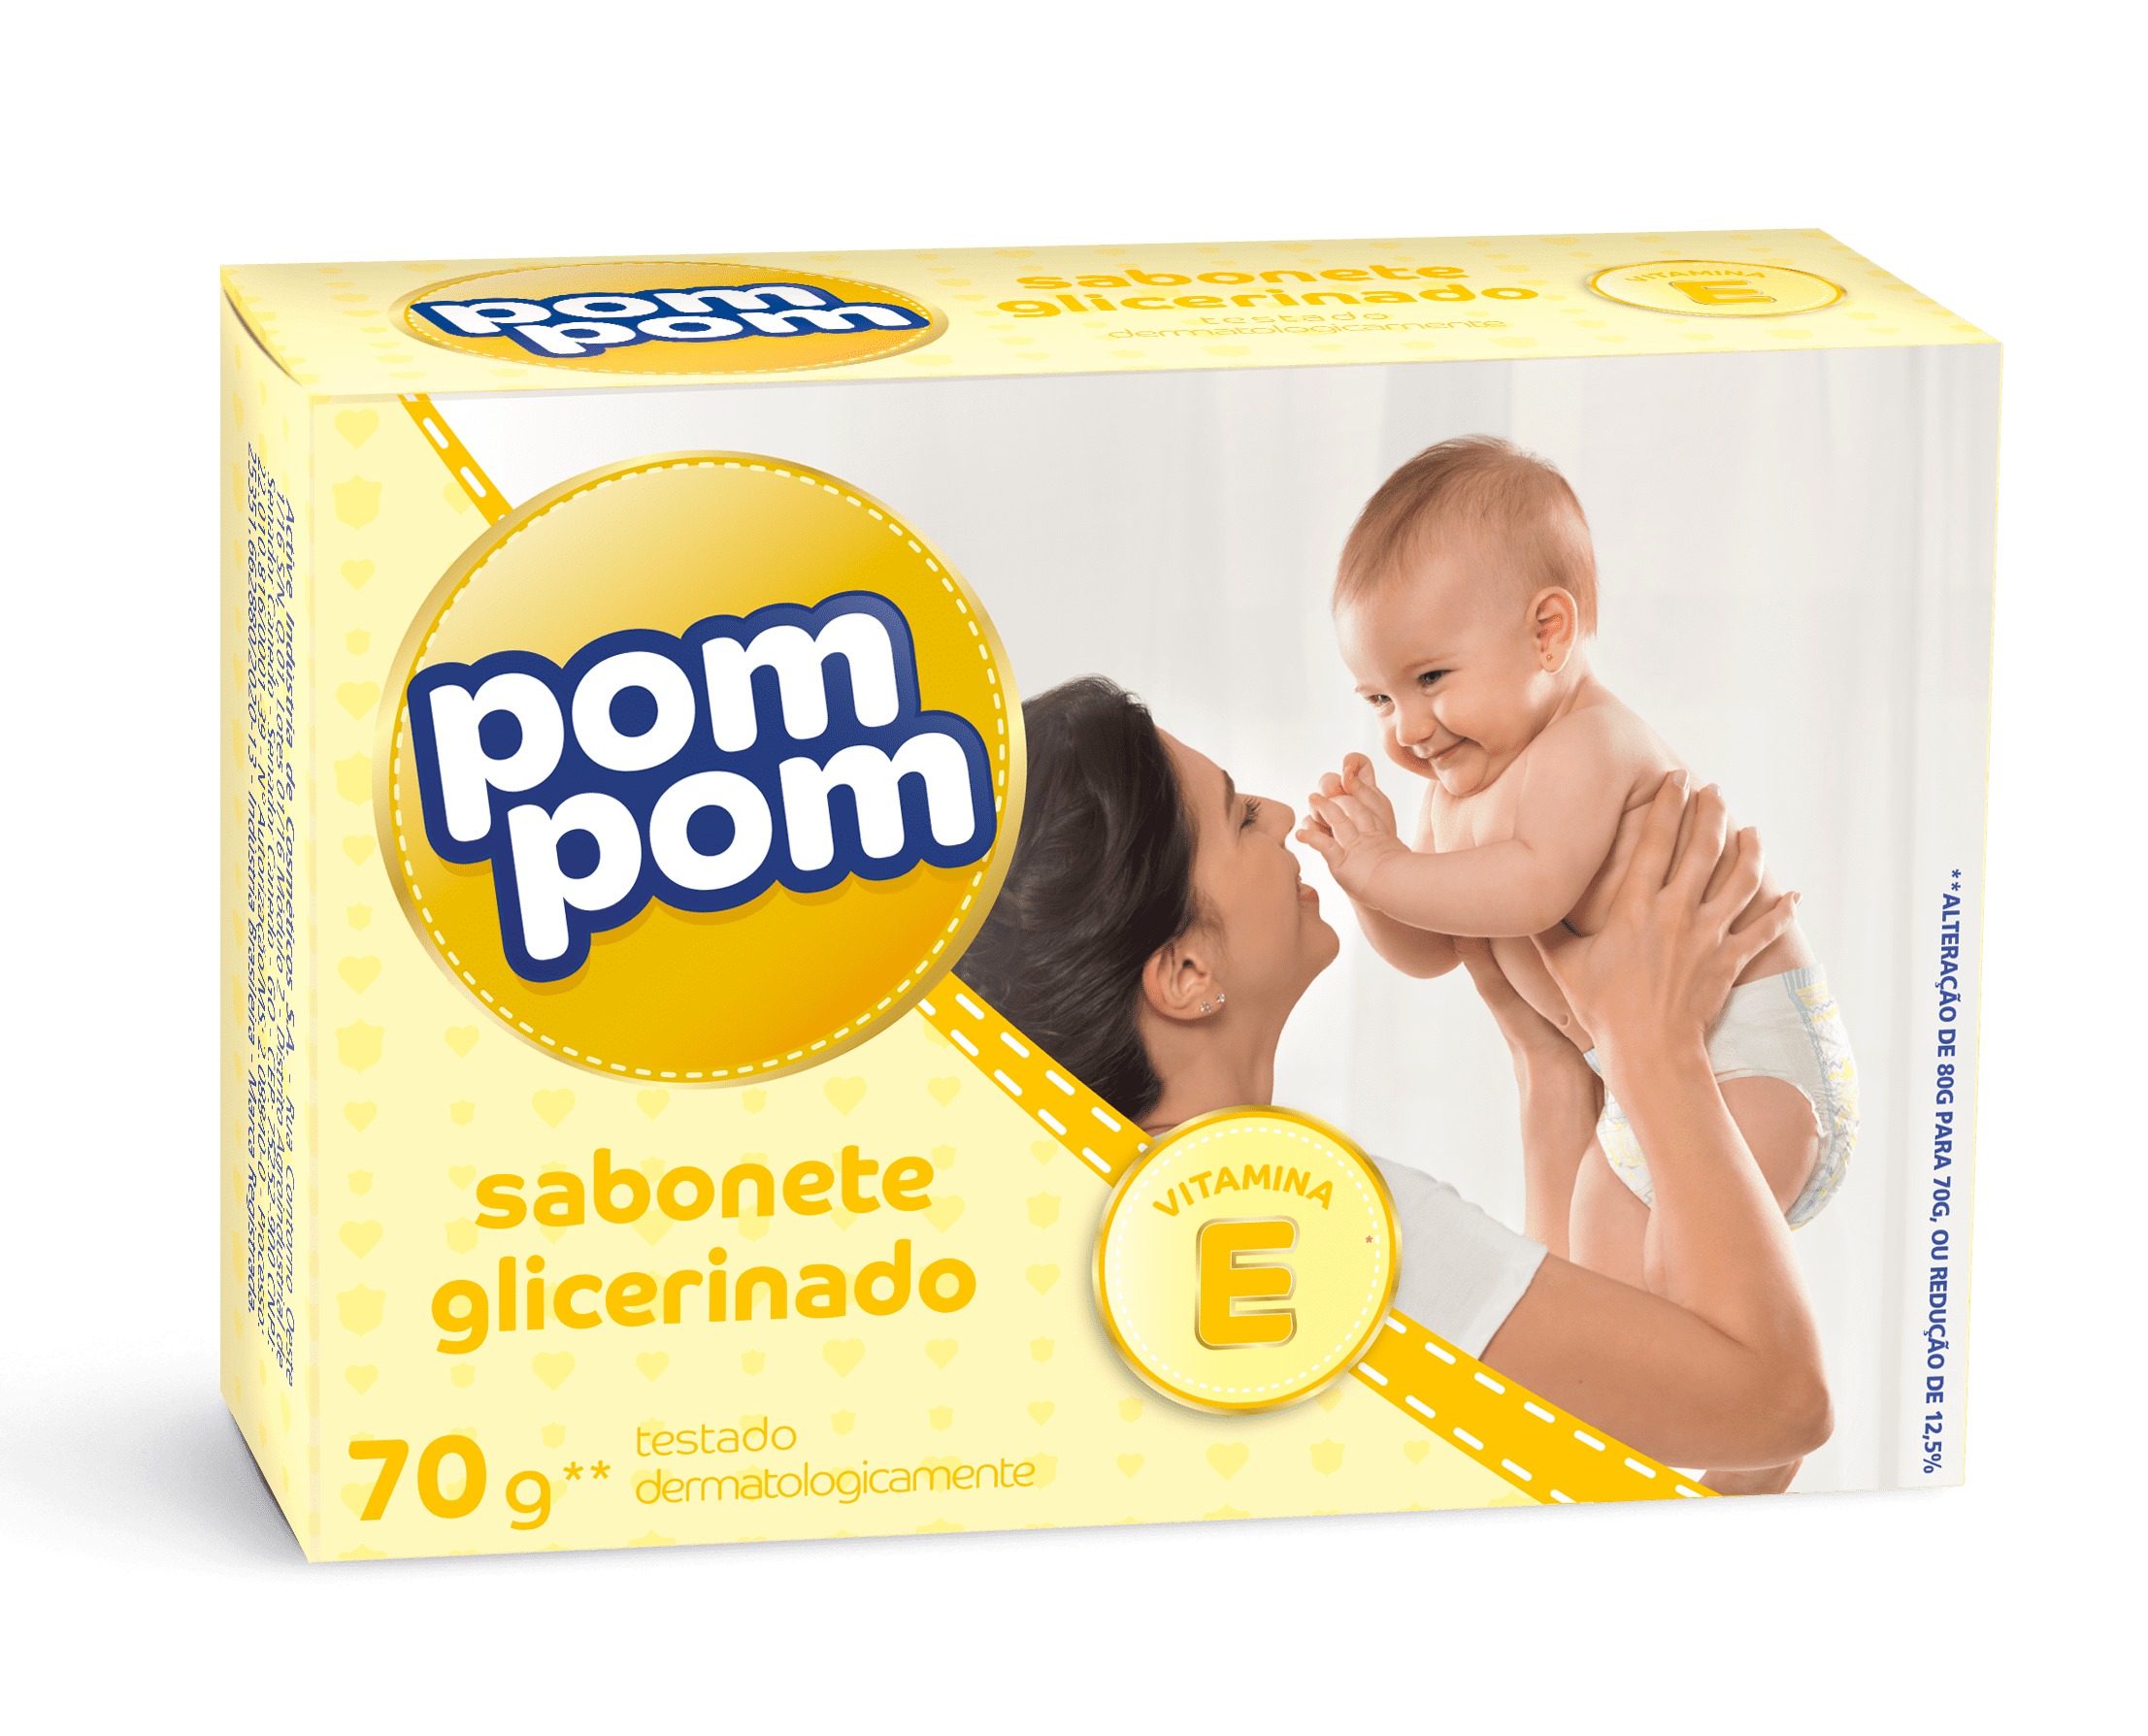 POMPOM - Sabonete glicerinado para Bebês - 70g - VENDA FINAL - EXPIRADO ou PRÓXIMO DE EXPIRAR